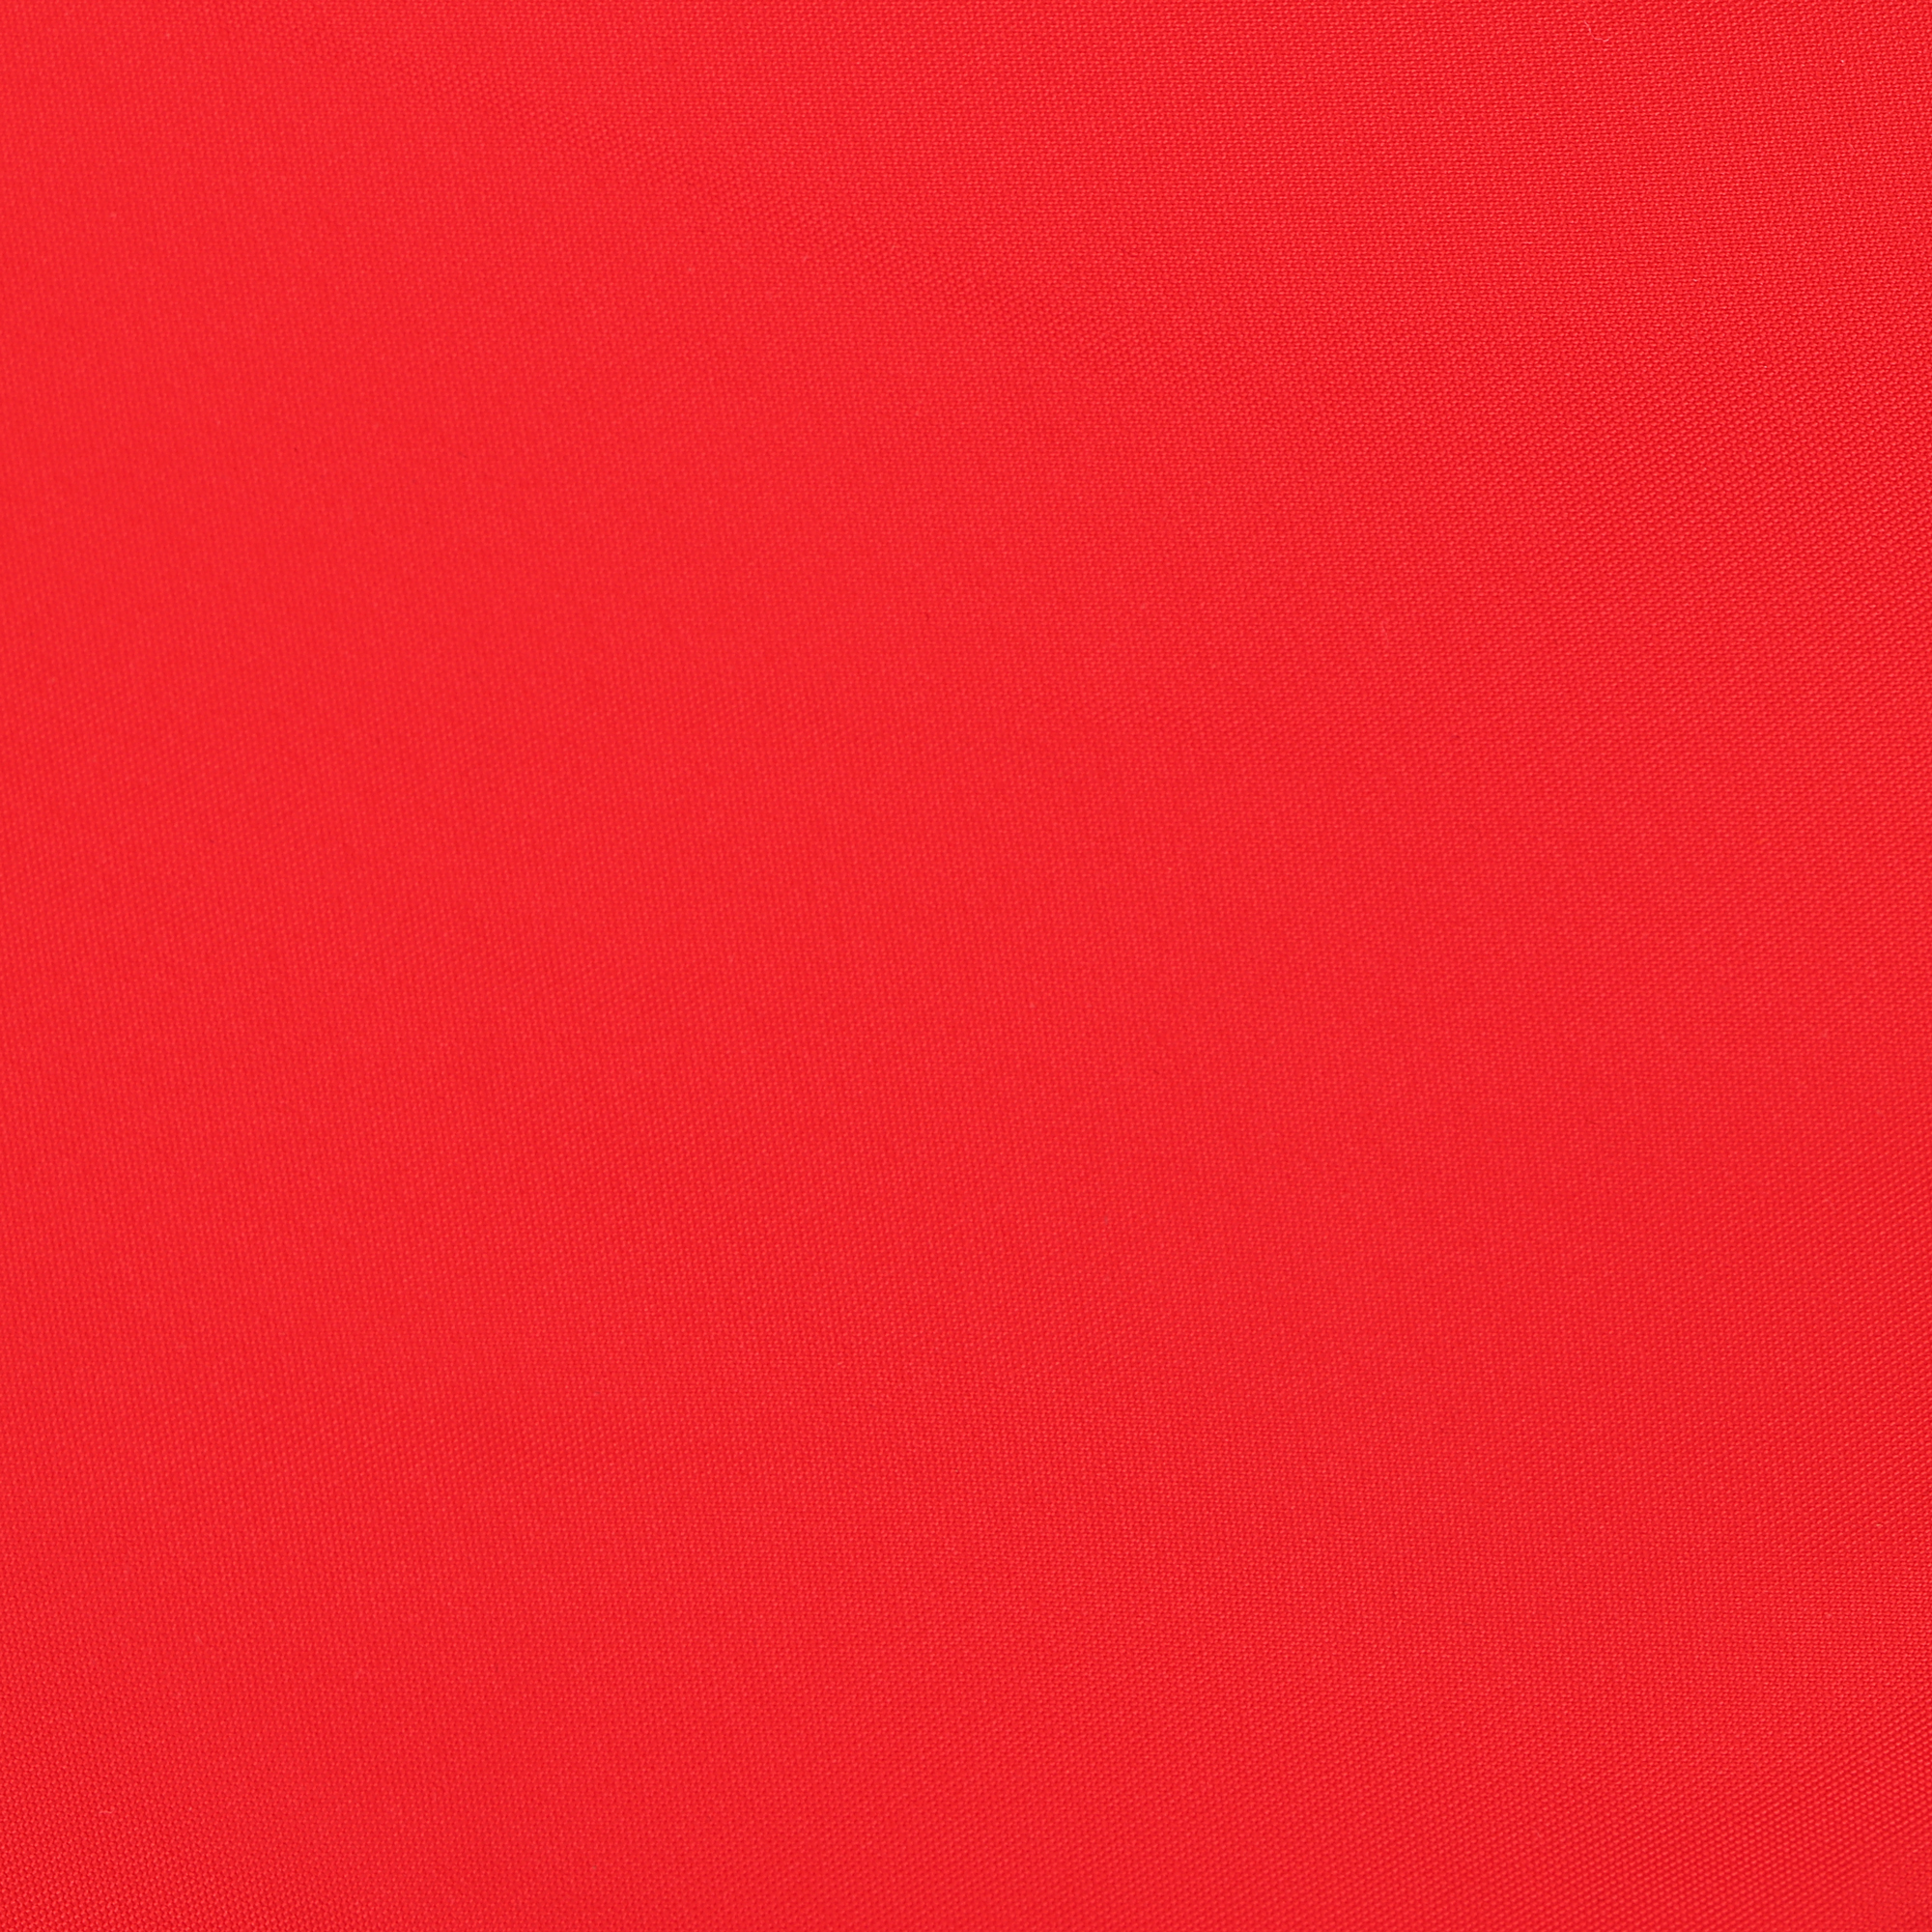 Мужские пляжные шорты Joyord красные, цвет красный, размер S - фото 4